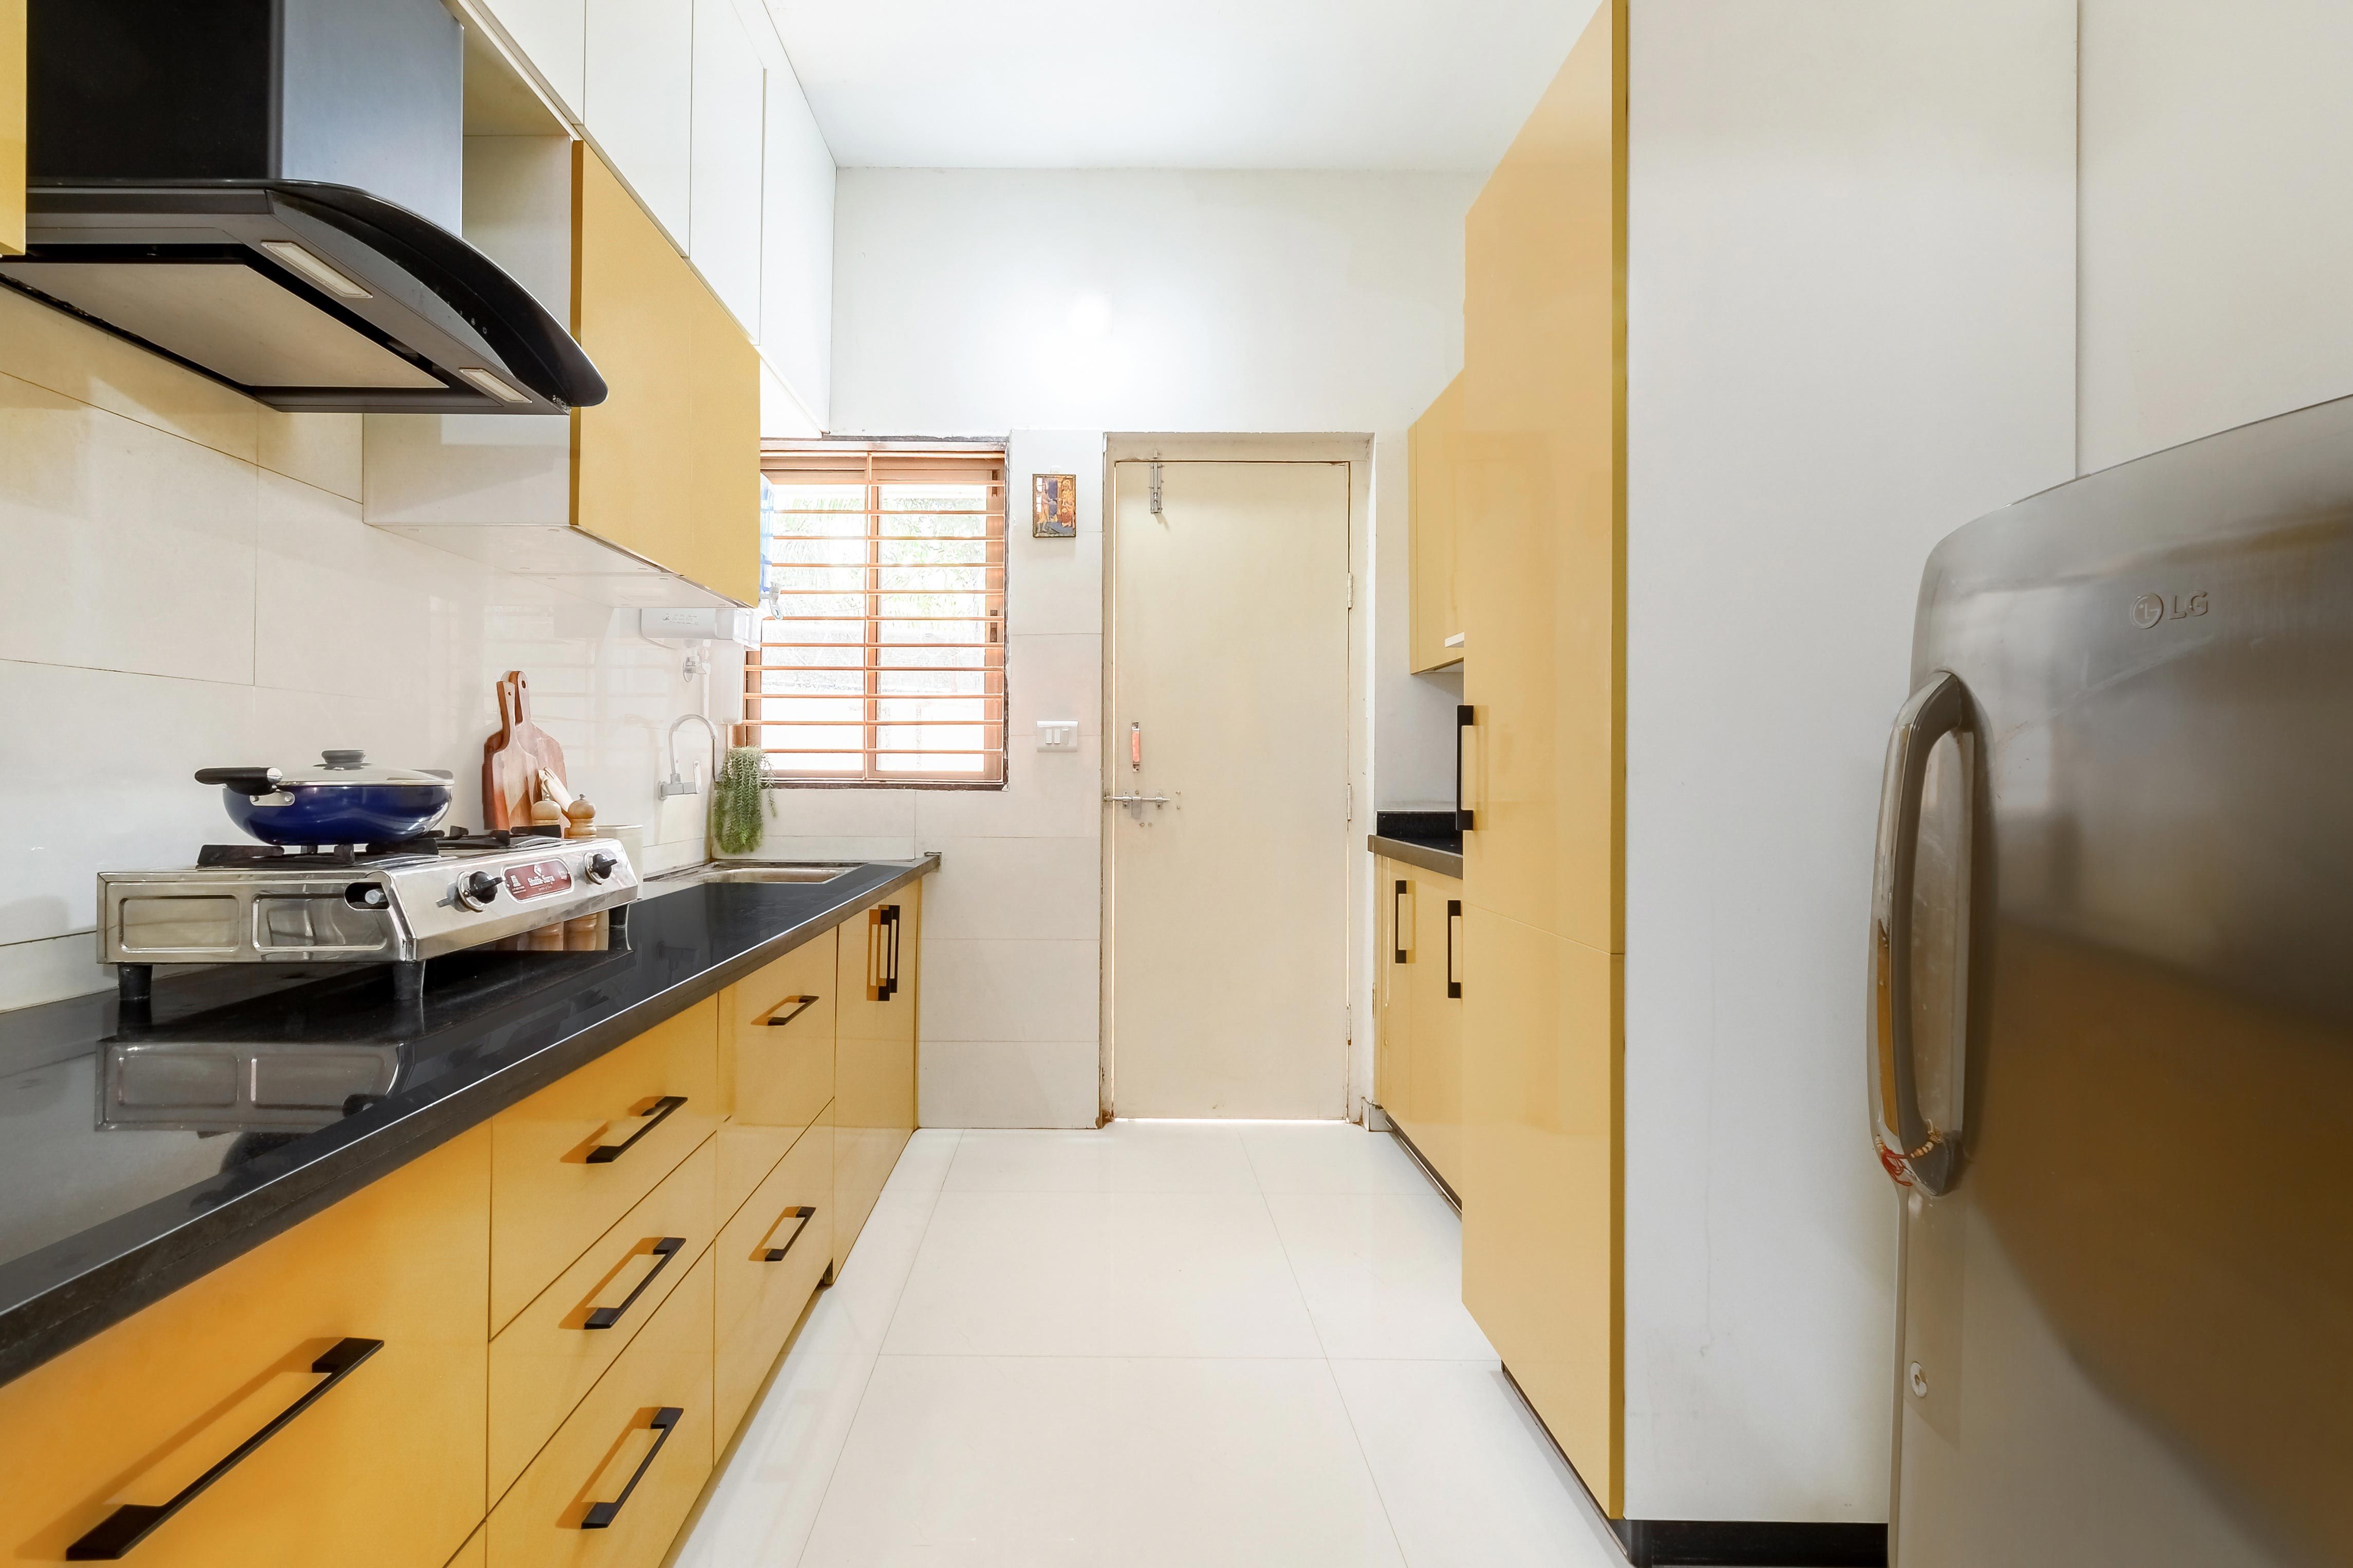 Modern Parallel Kitchen Cabinet Design With Loft Storage